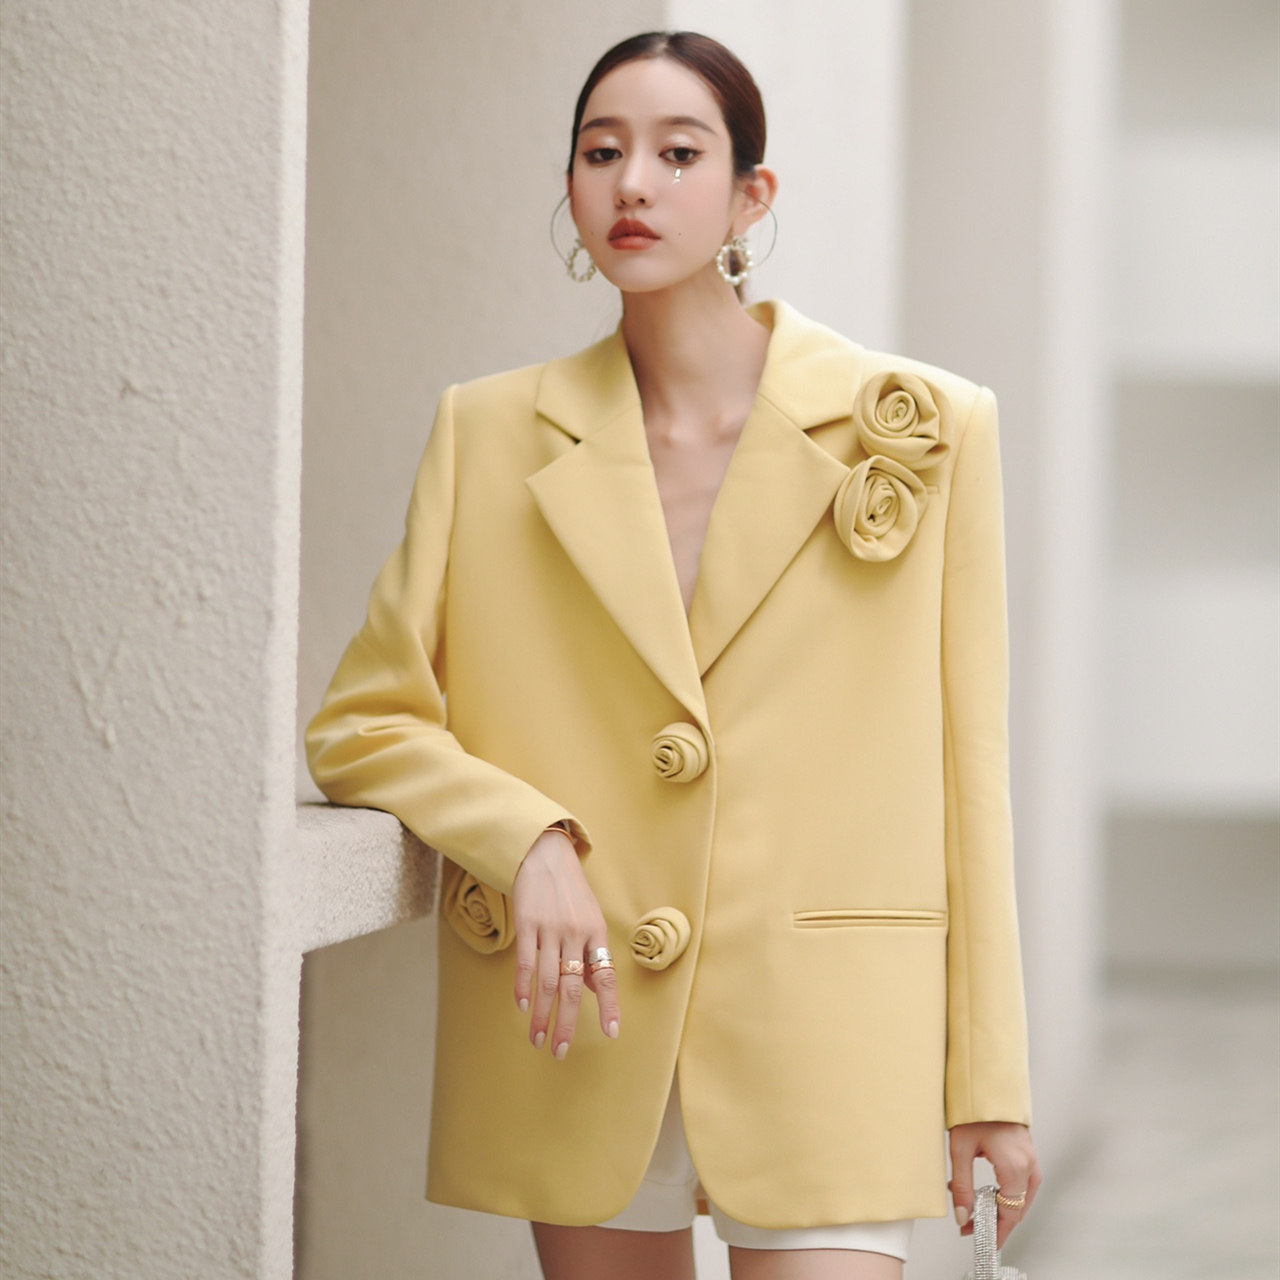 木兰Masion Wester2021FW新款复古玫瑰立体花朵廓形黄色西装外套